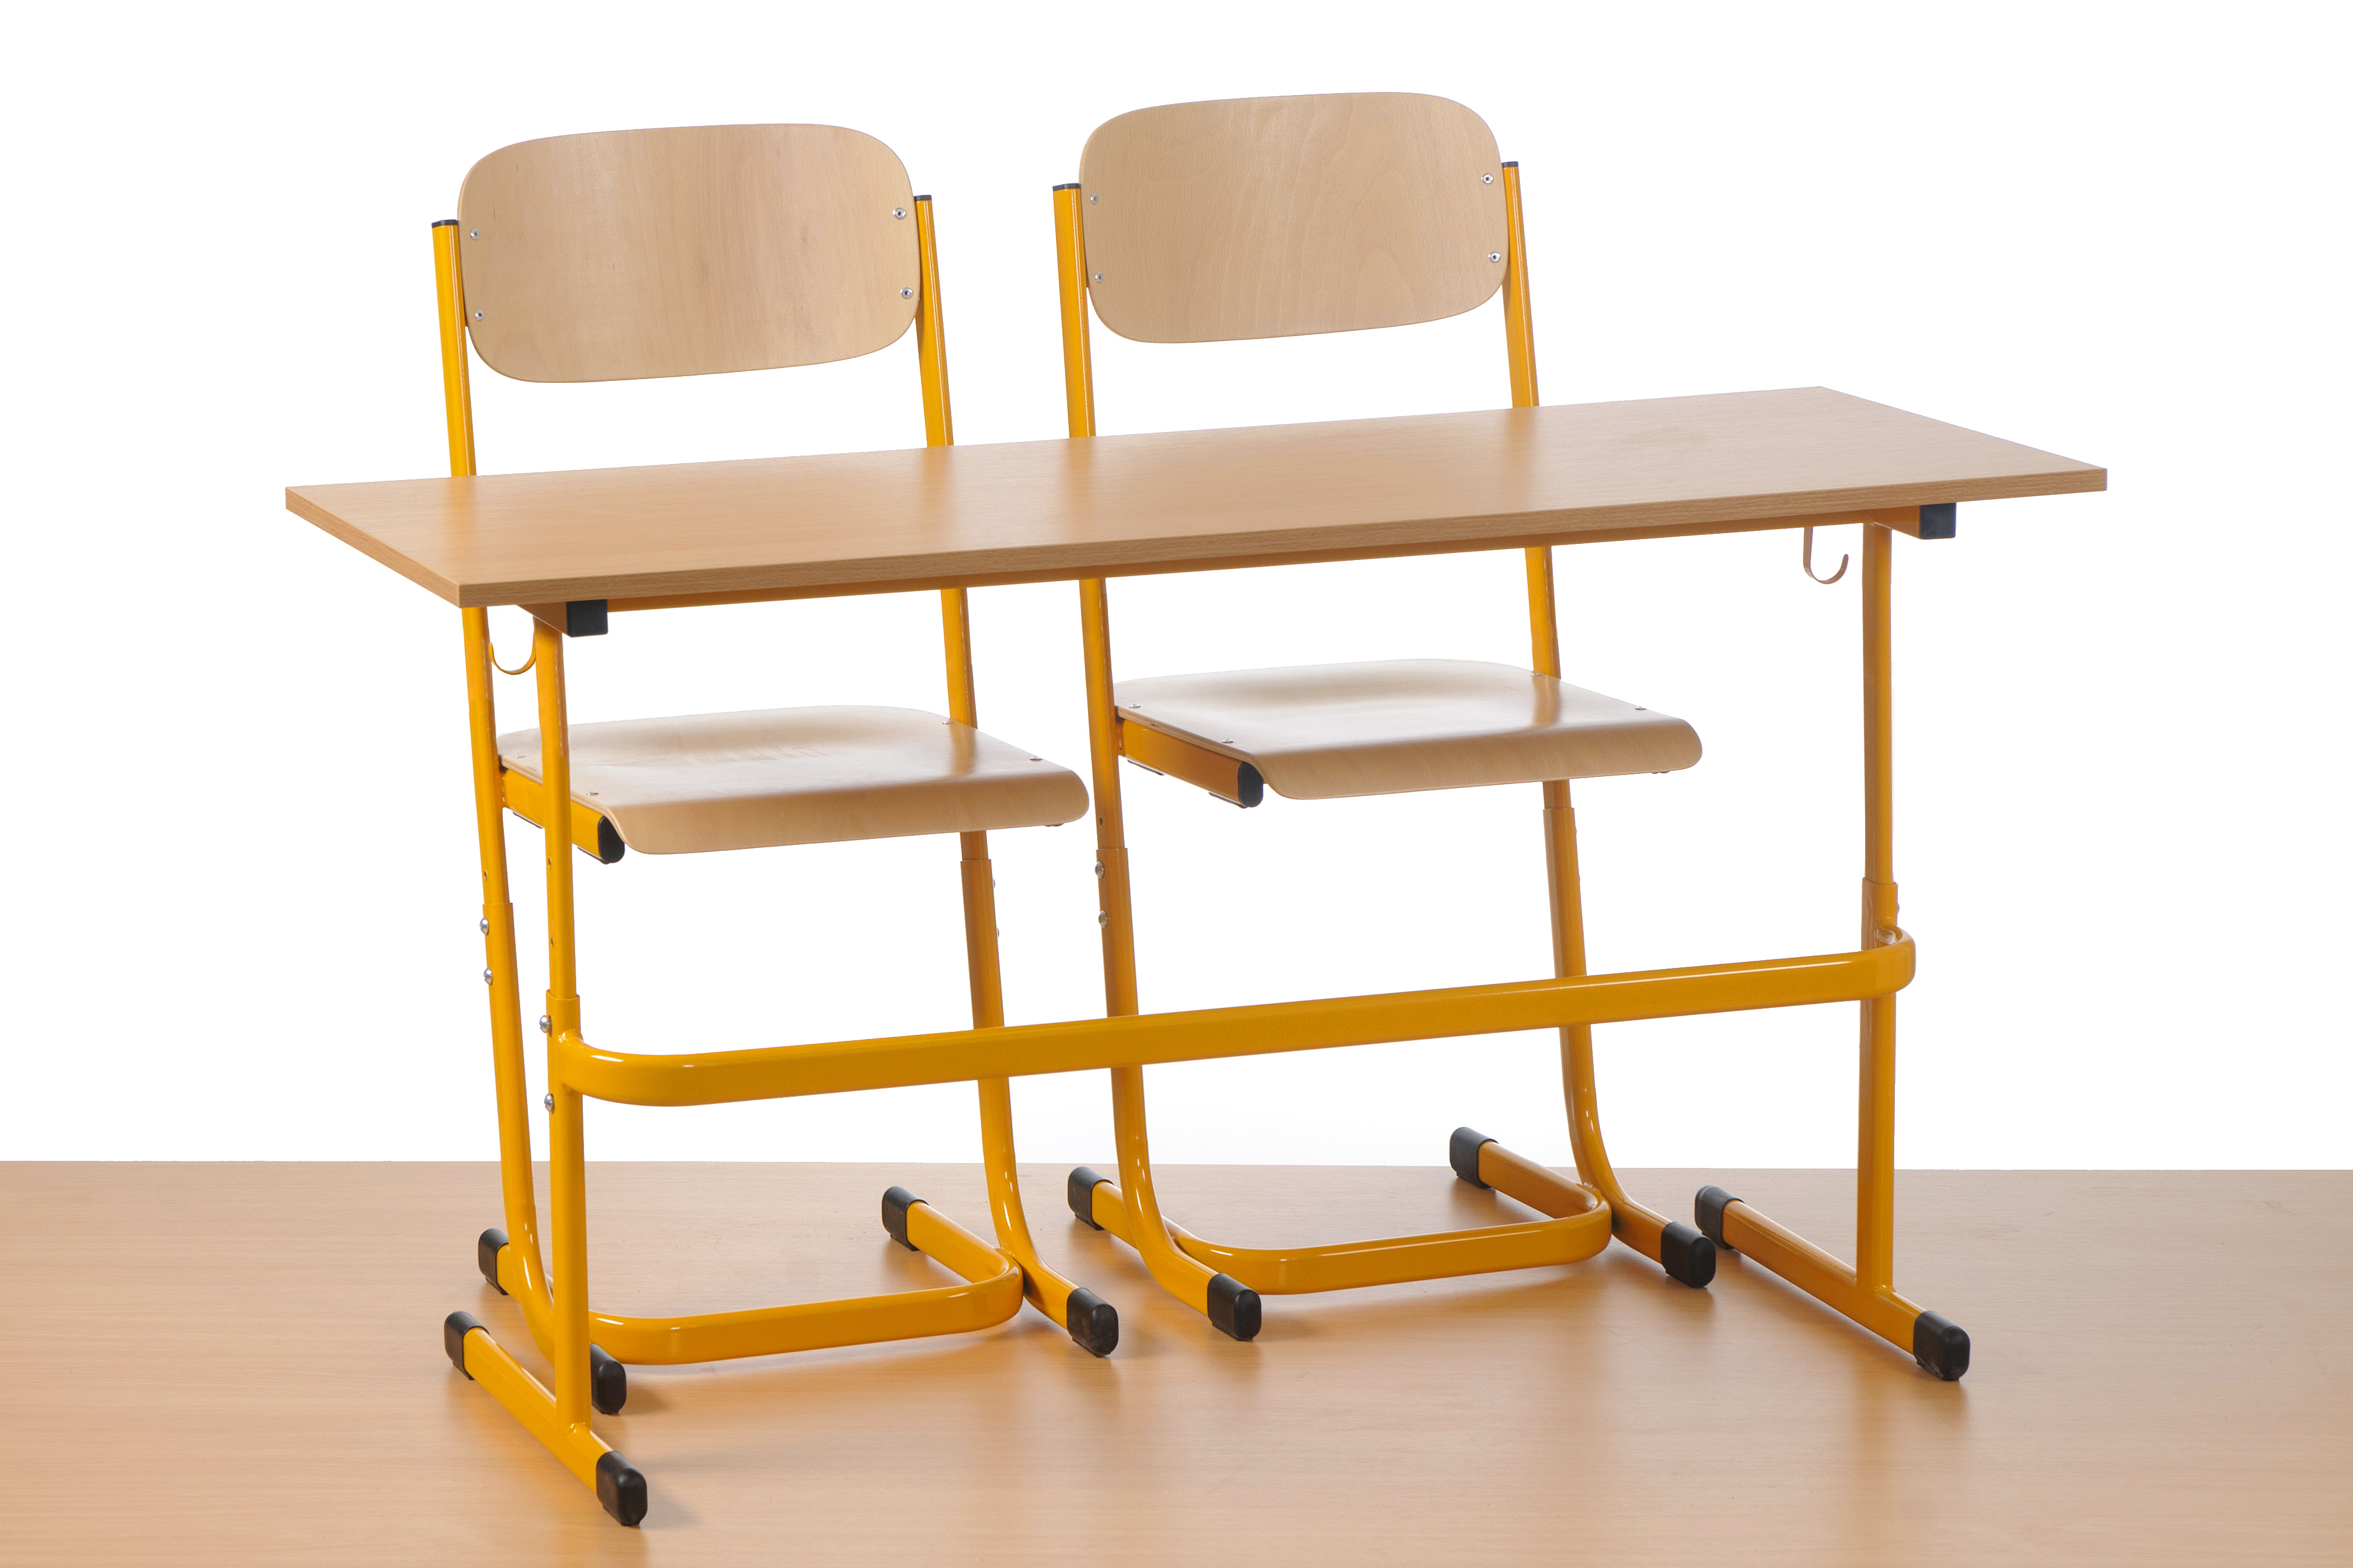 Table LOVC avec 2 chaises: hauteur réglable